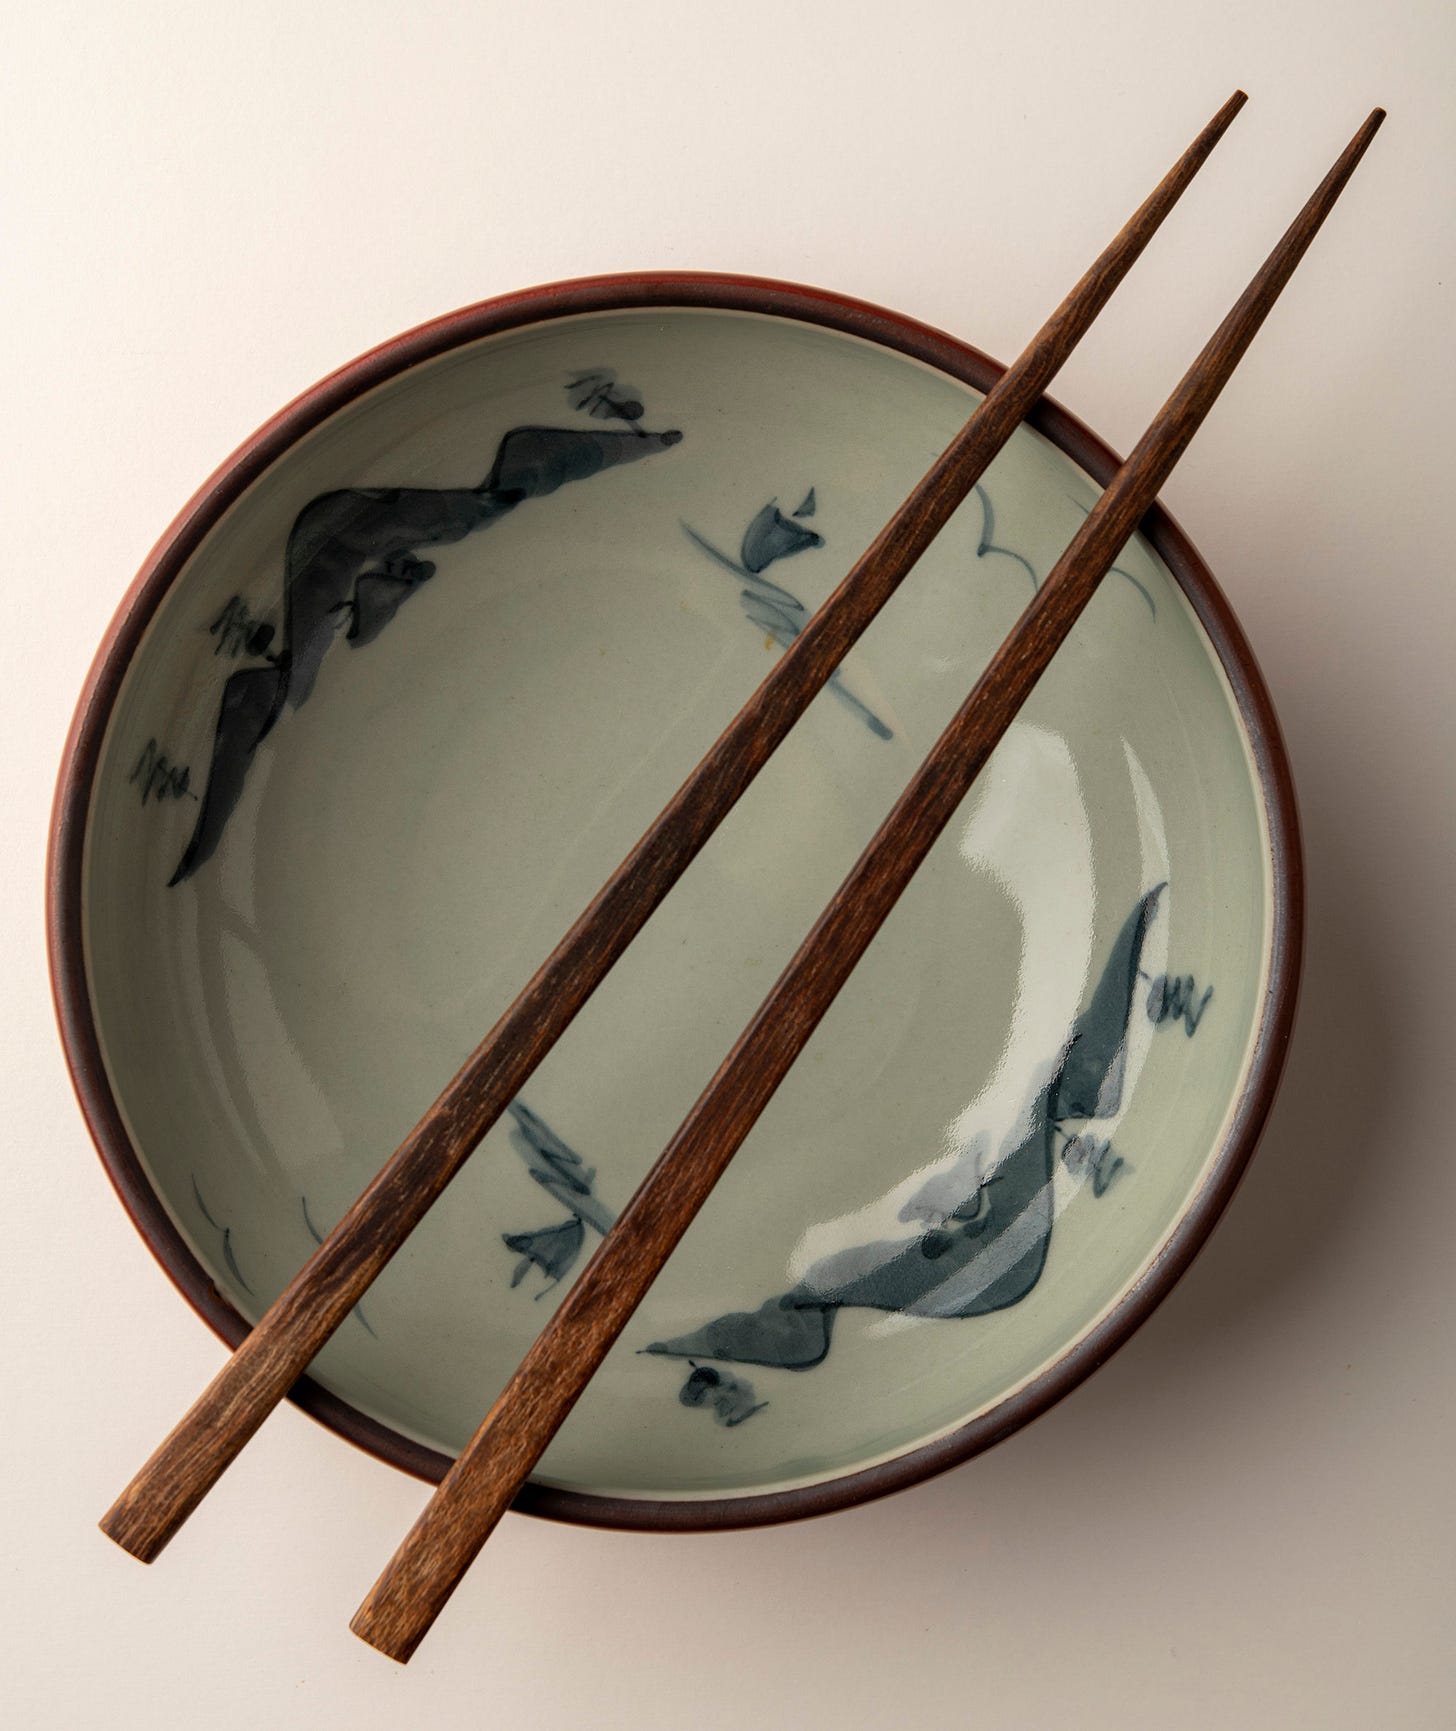 Empty bowl with chopsticks